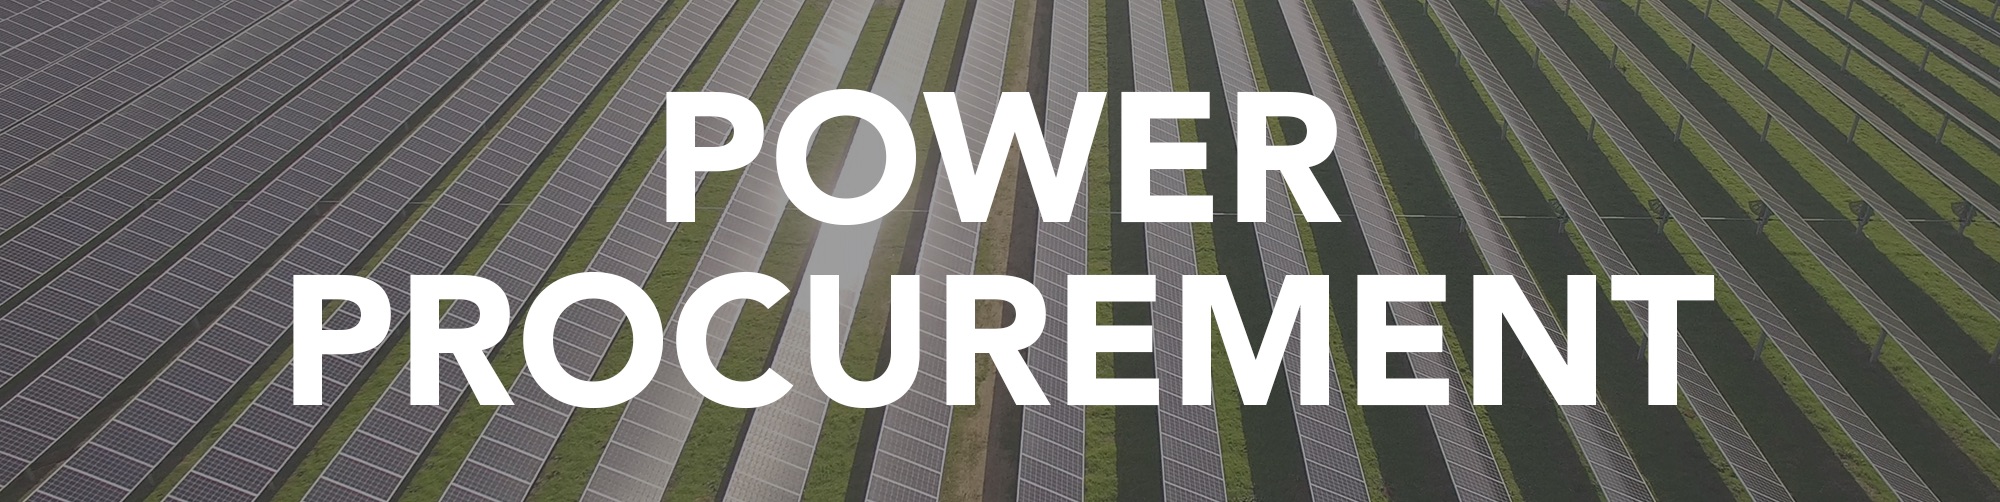 Закупки электроэнергии | MCE новости и статьи